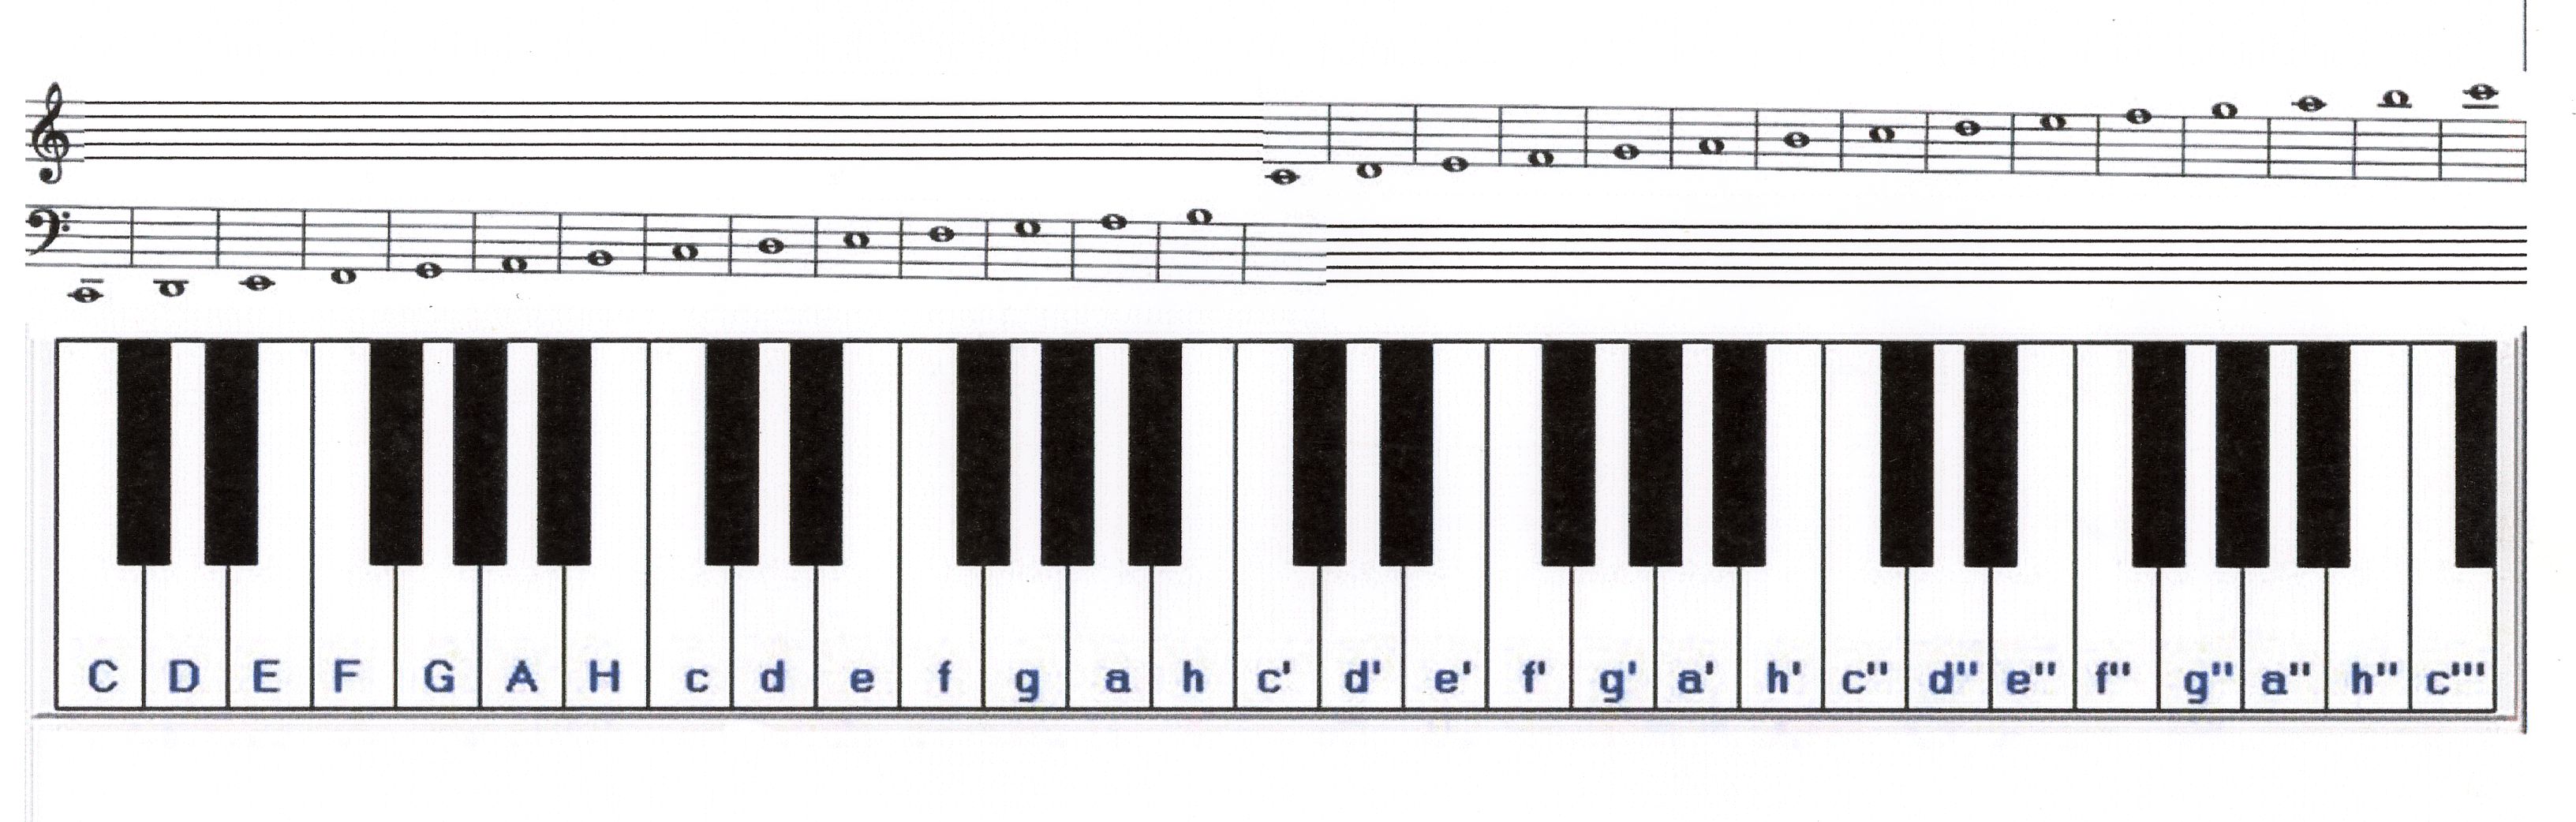 Клавиатура фортепиано для сольфеджио 2 октавы